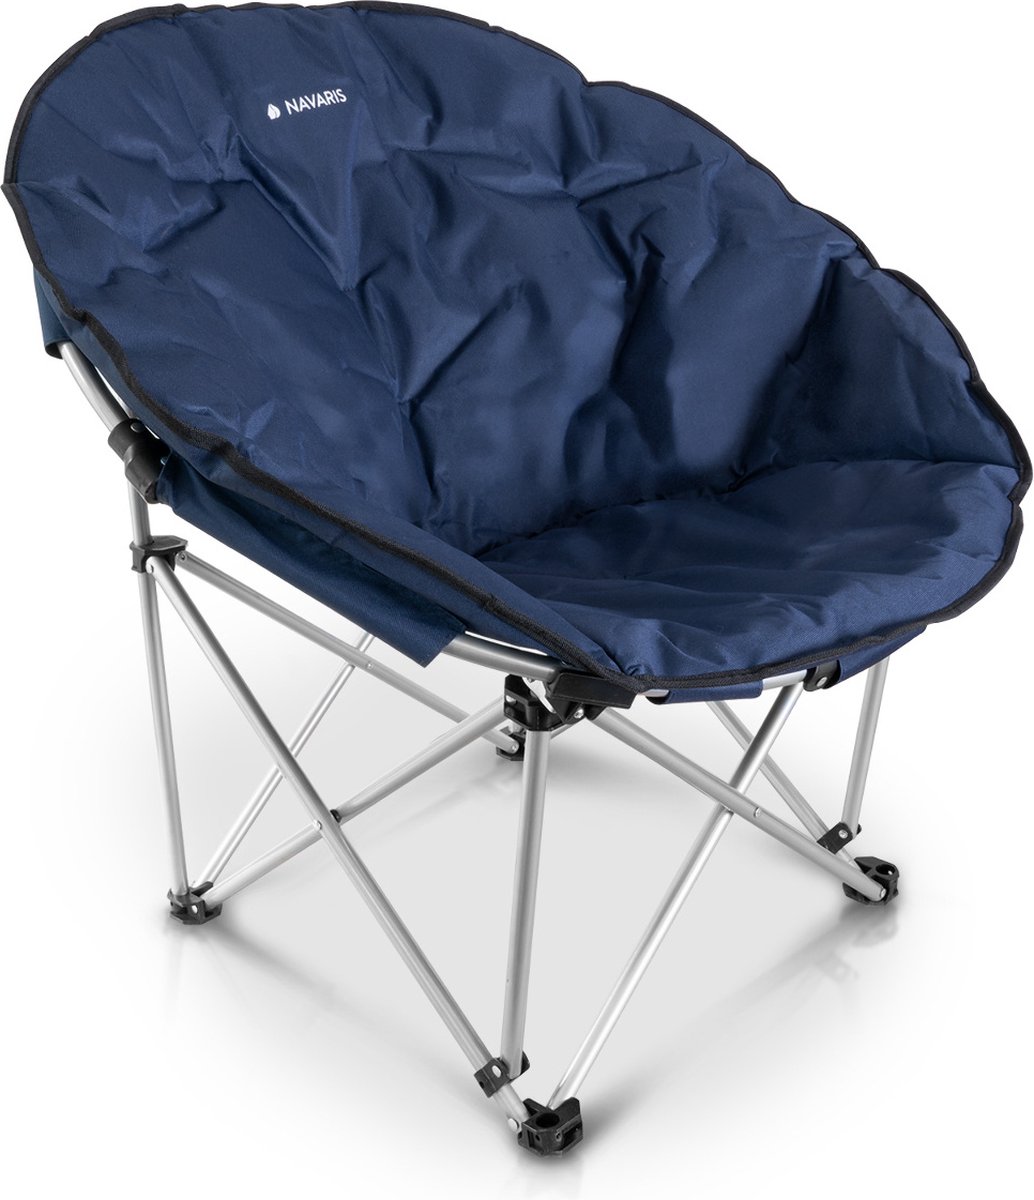 Navaris klapstoel met draagtas - Campingstoel - Draagbare stoel voor kamperen, festivals en vissen - Strandstoel - Inklapbaar - Donkerblauw